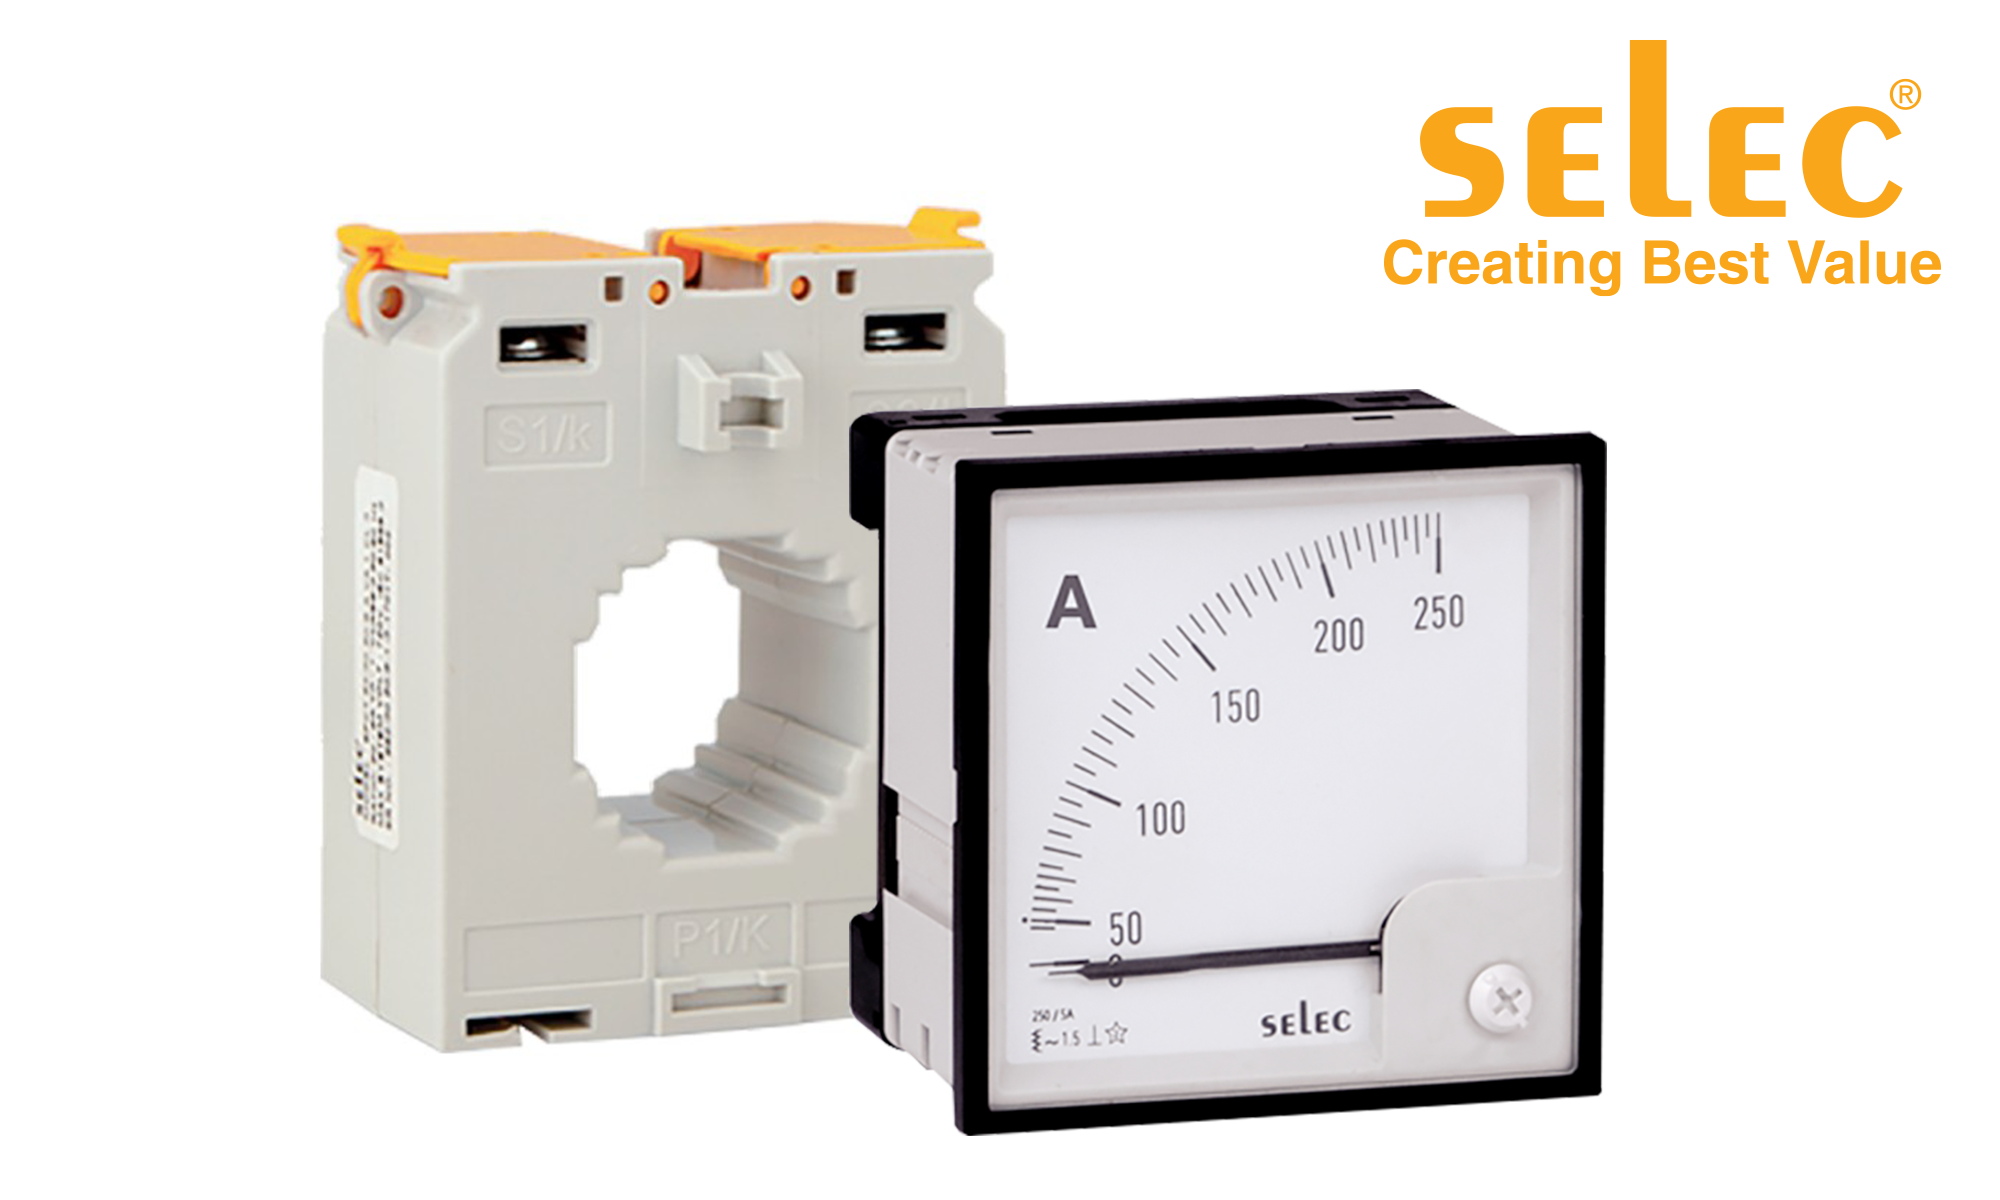 Panel meters by Selec